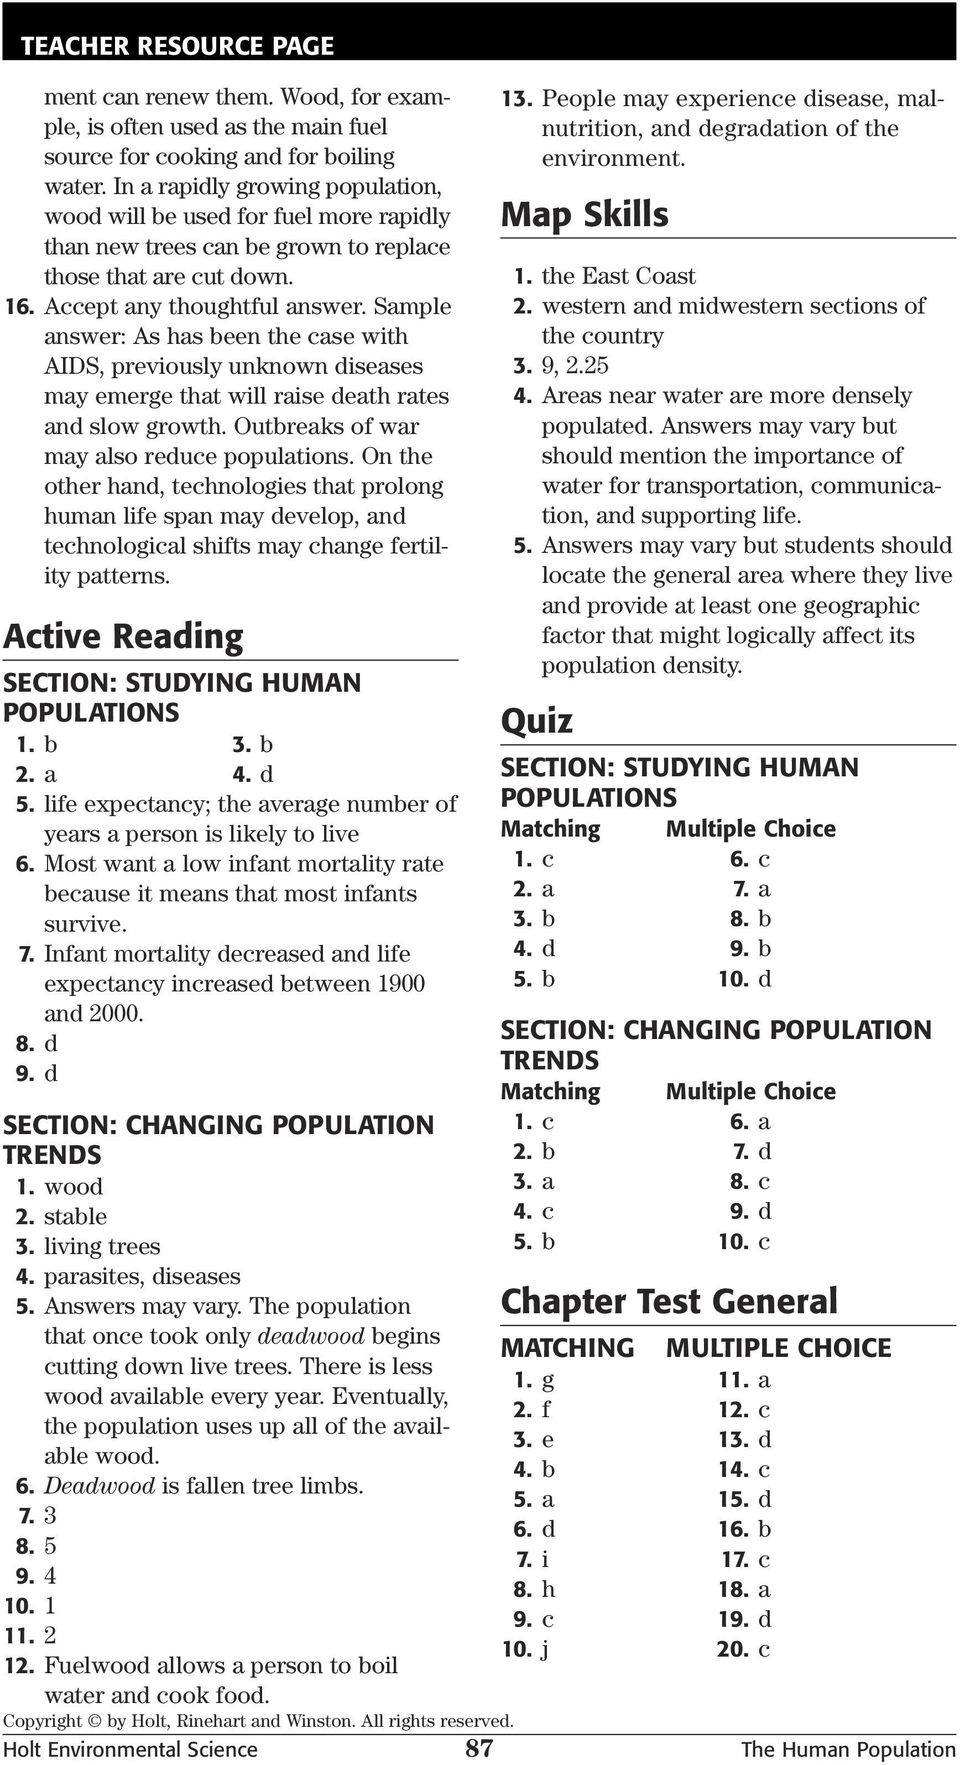 Critical Thinking ANALOGIES. Skills Worksheet - PDF Free Download With Regard To Skills Worksheet Critical Thinking Analogies